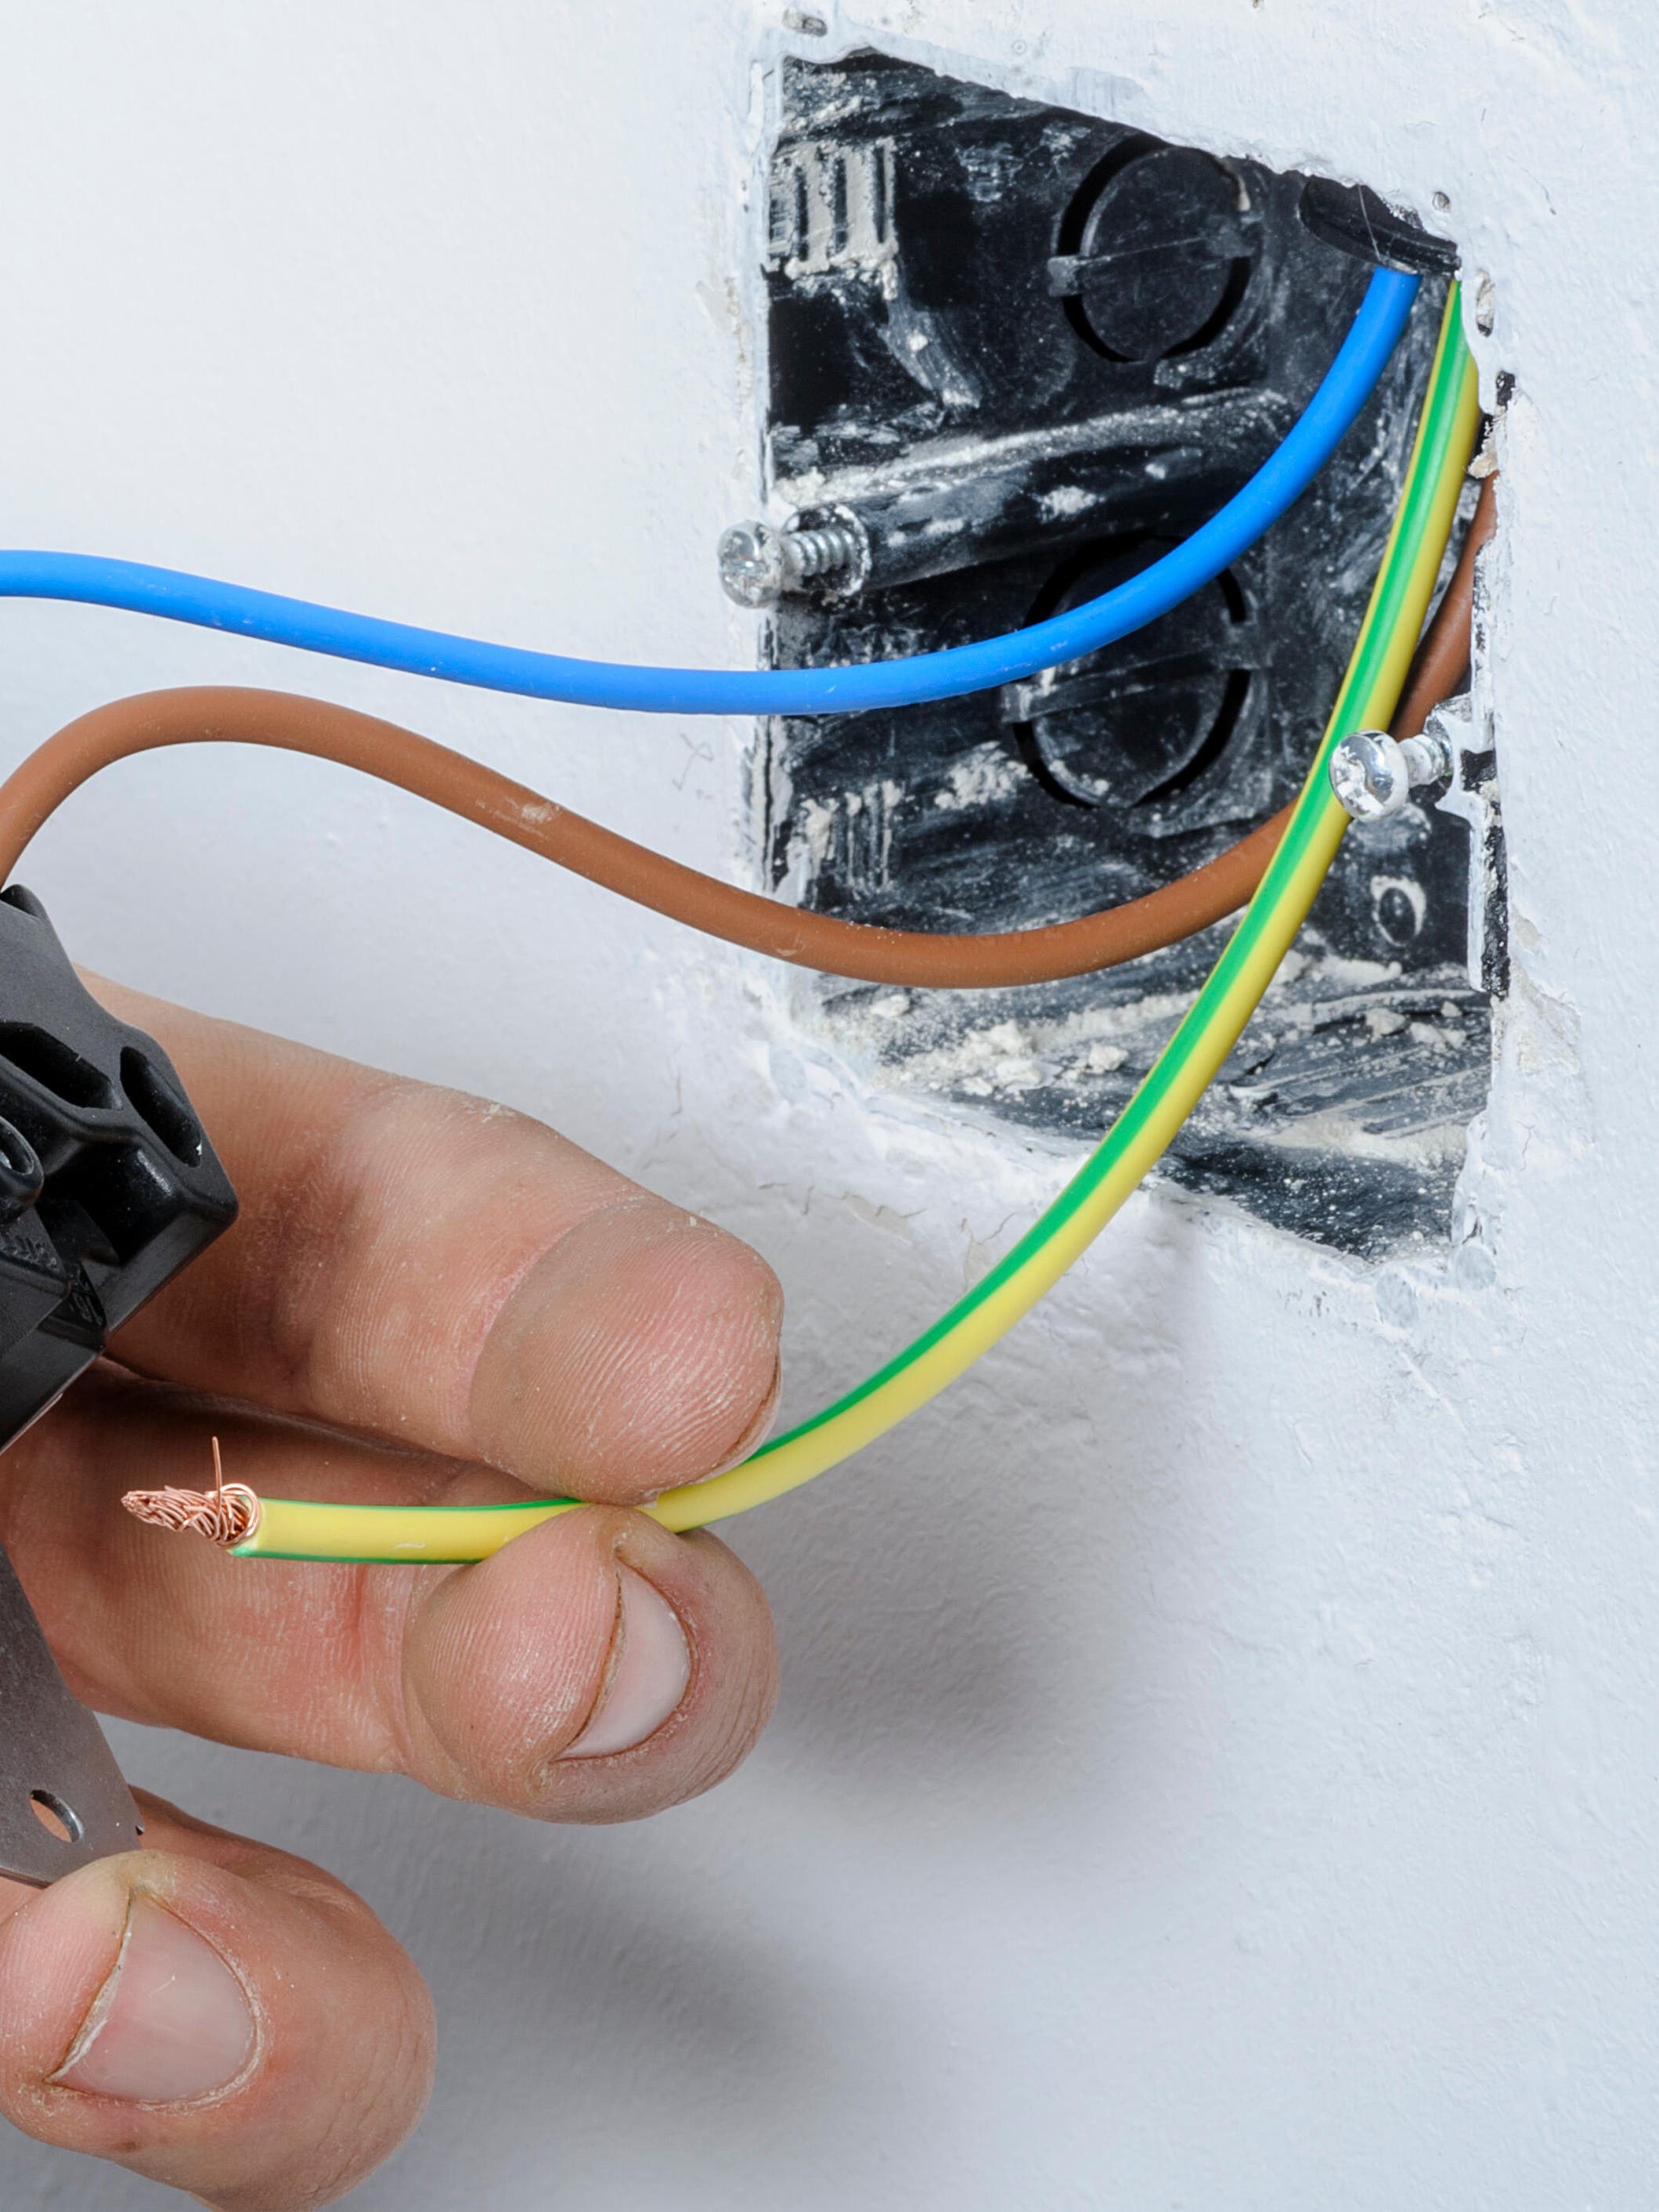 Cómo sustituir un regulador de luz por un interruptor normal?